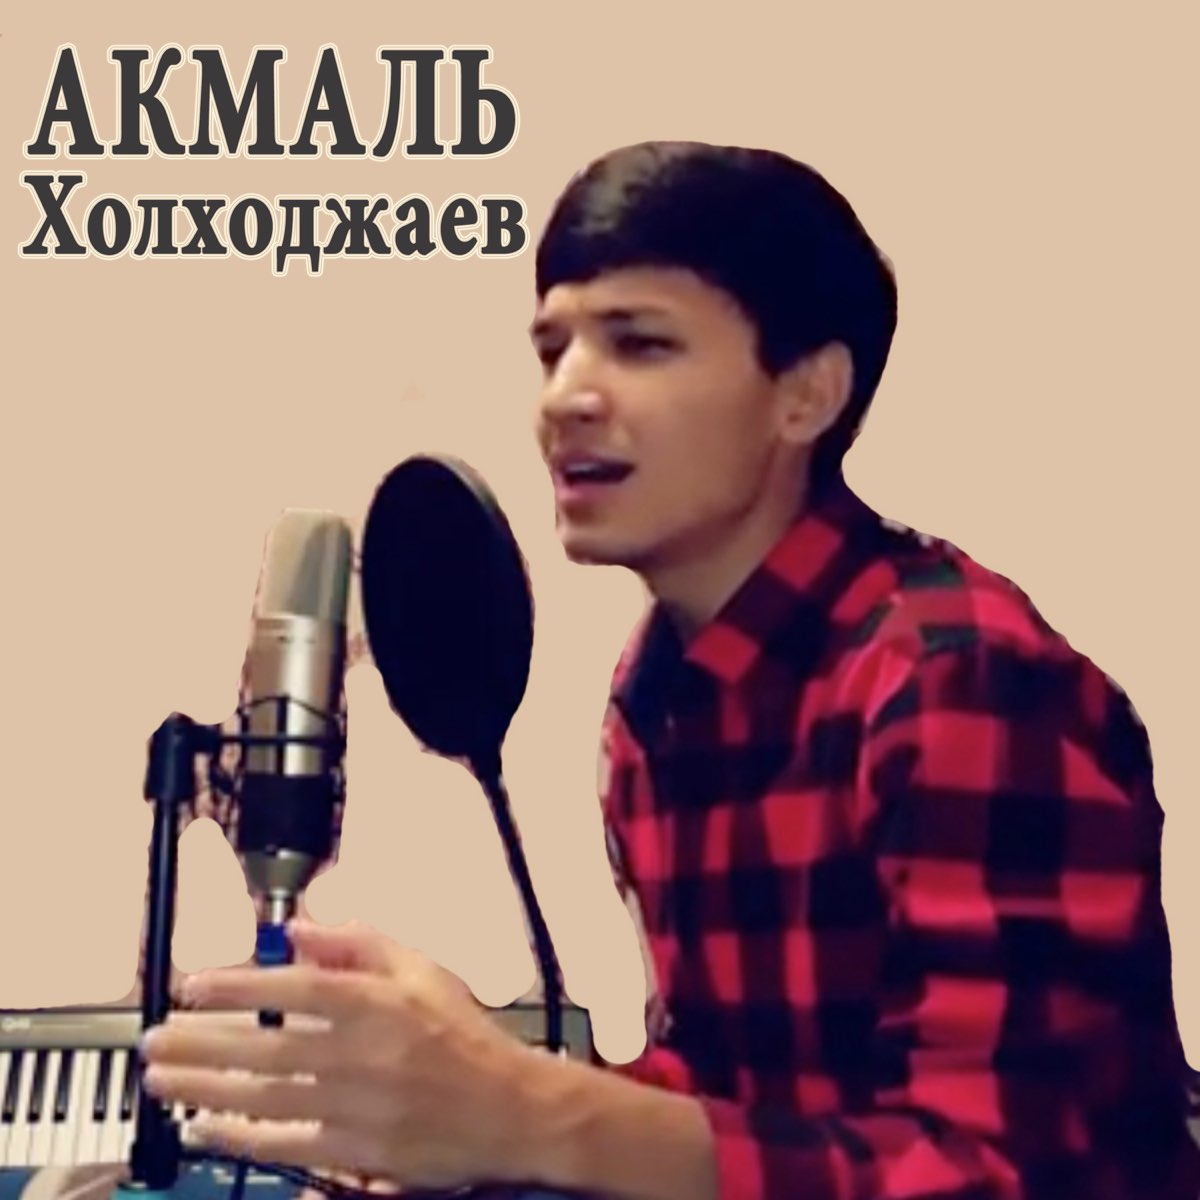 Акмаль певец слушать. Akmal певец. Акмал Ходжаниязов. Акмал Холхужаев. Akmal' Холходжаев.